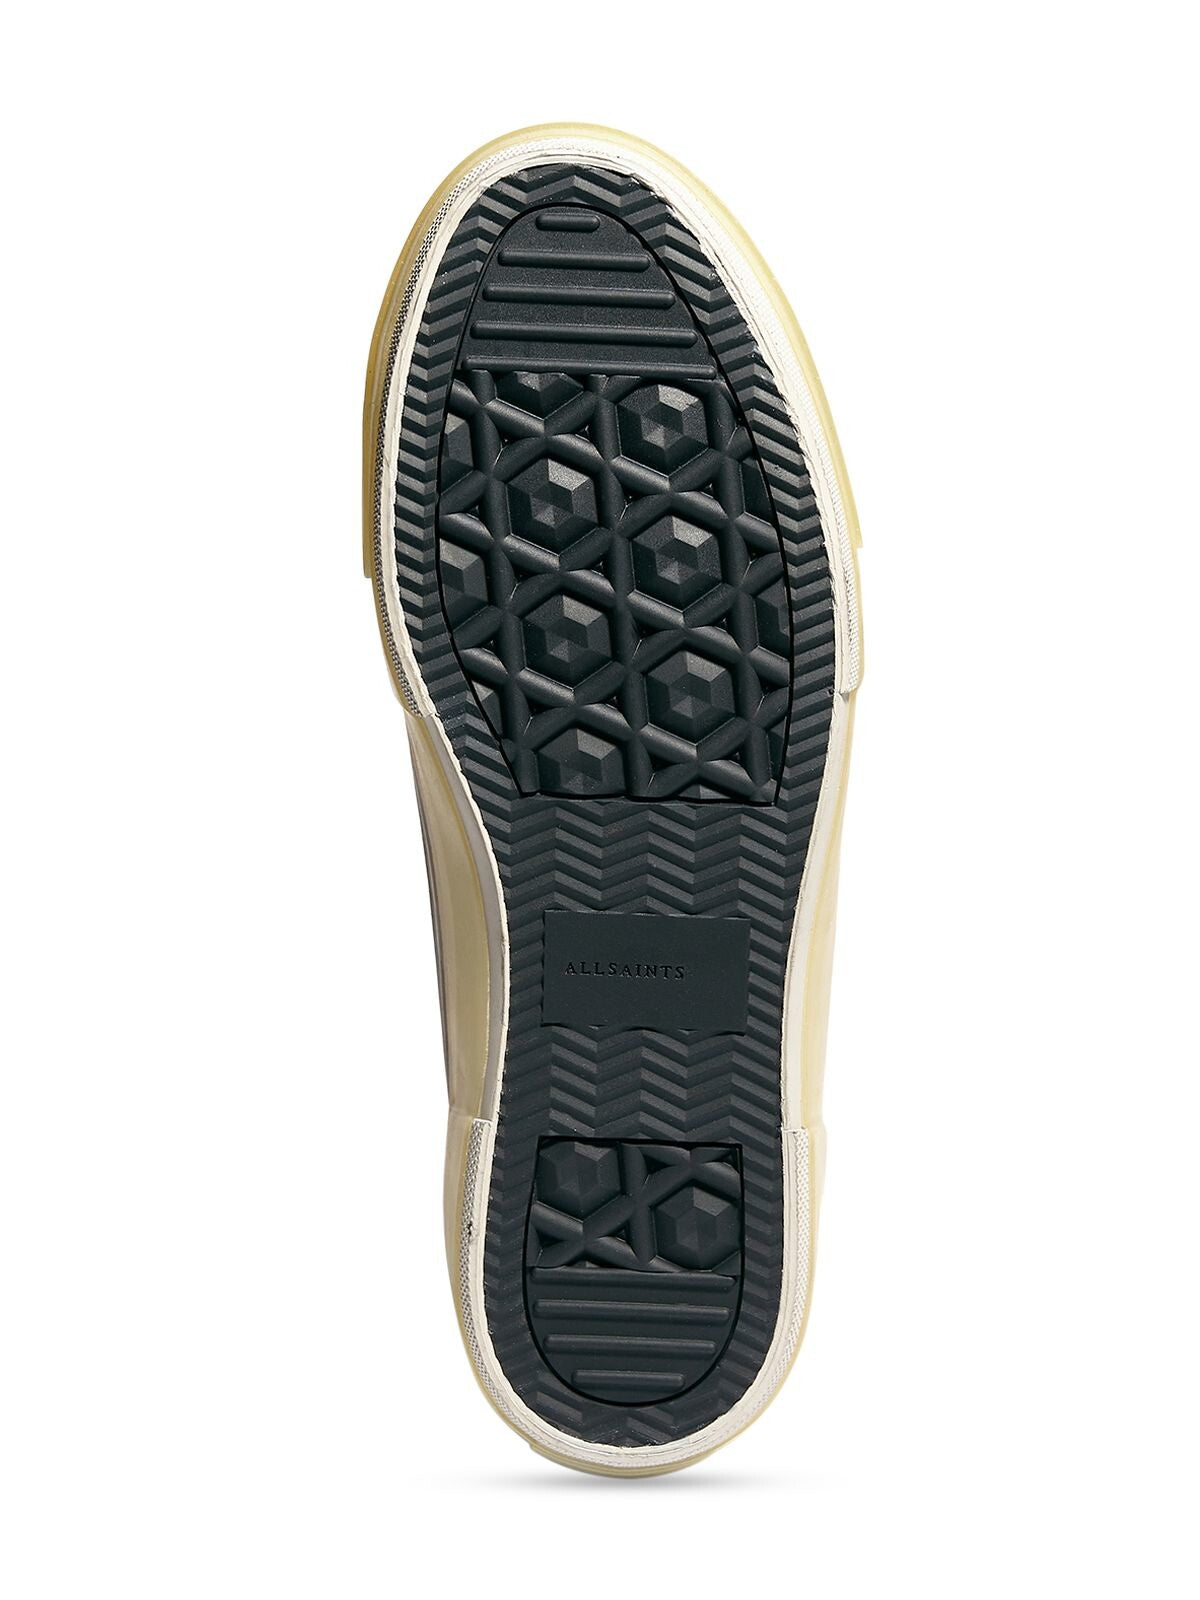 ALLSAINTS Mens Black Comfort Jaxon Round Toe Platform Lace-Up Athletic Sneakers Shoes